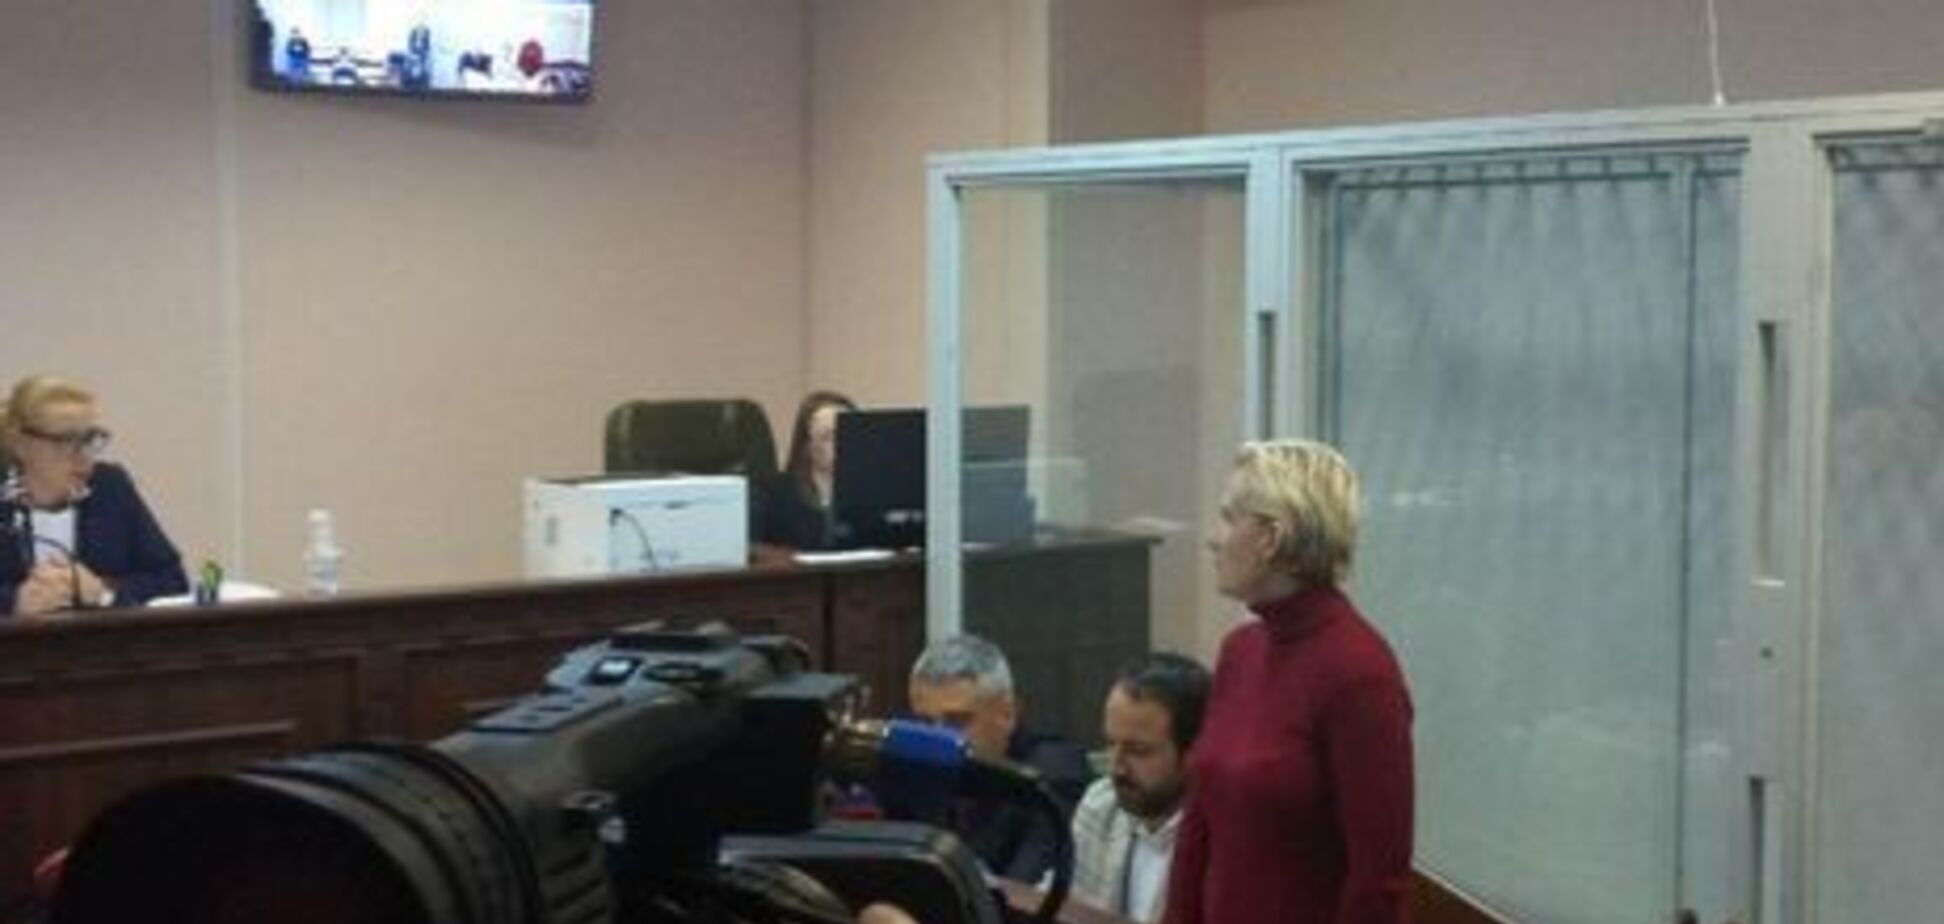 'Кладешь деньги в ячейку, идешь на собеседование': появились новые детали в деле взяточников в офисе Зеленского